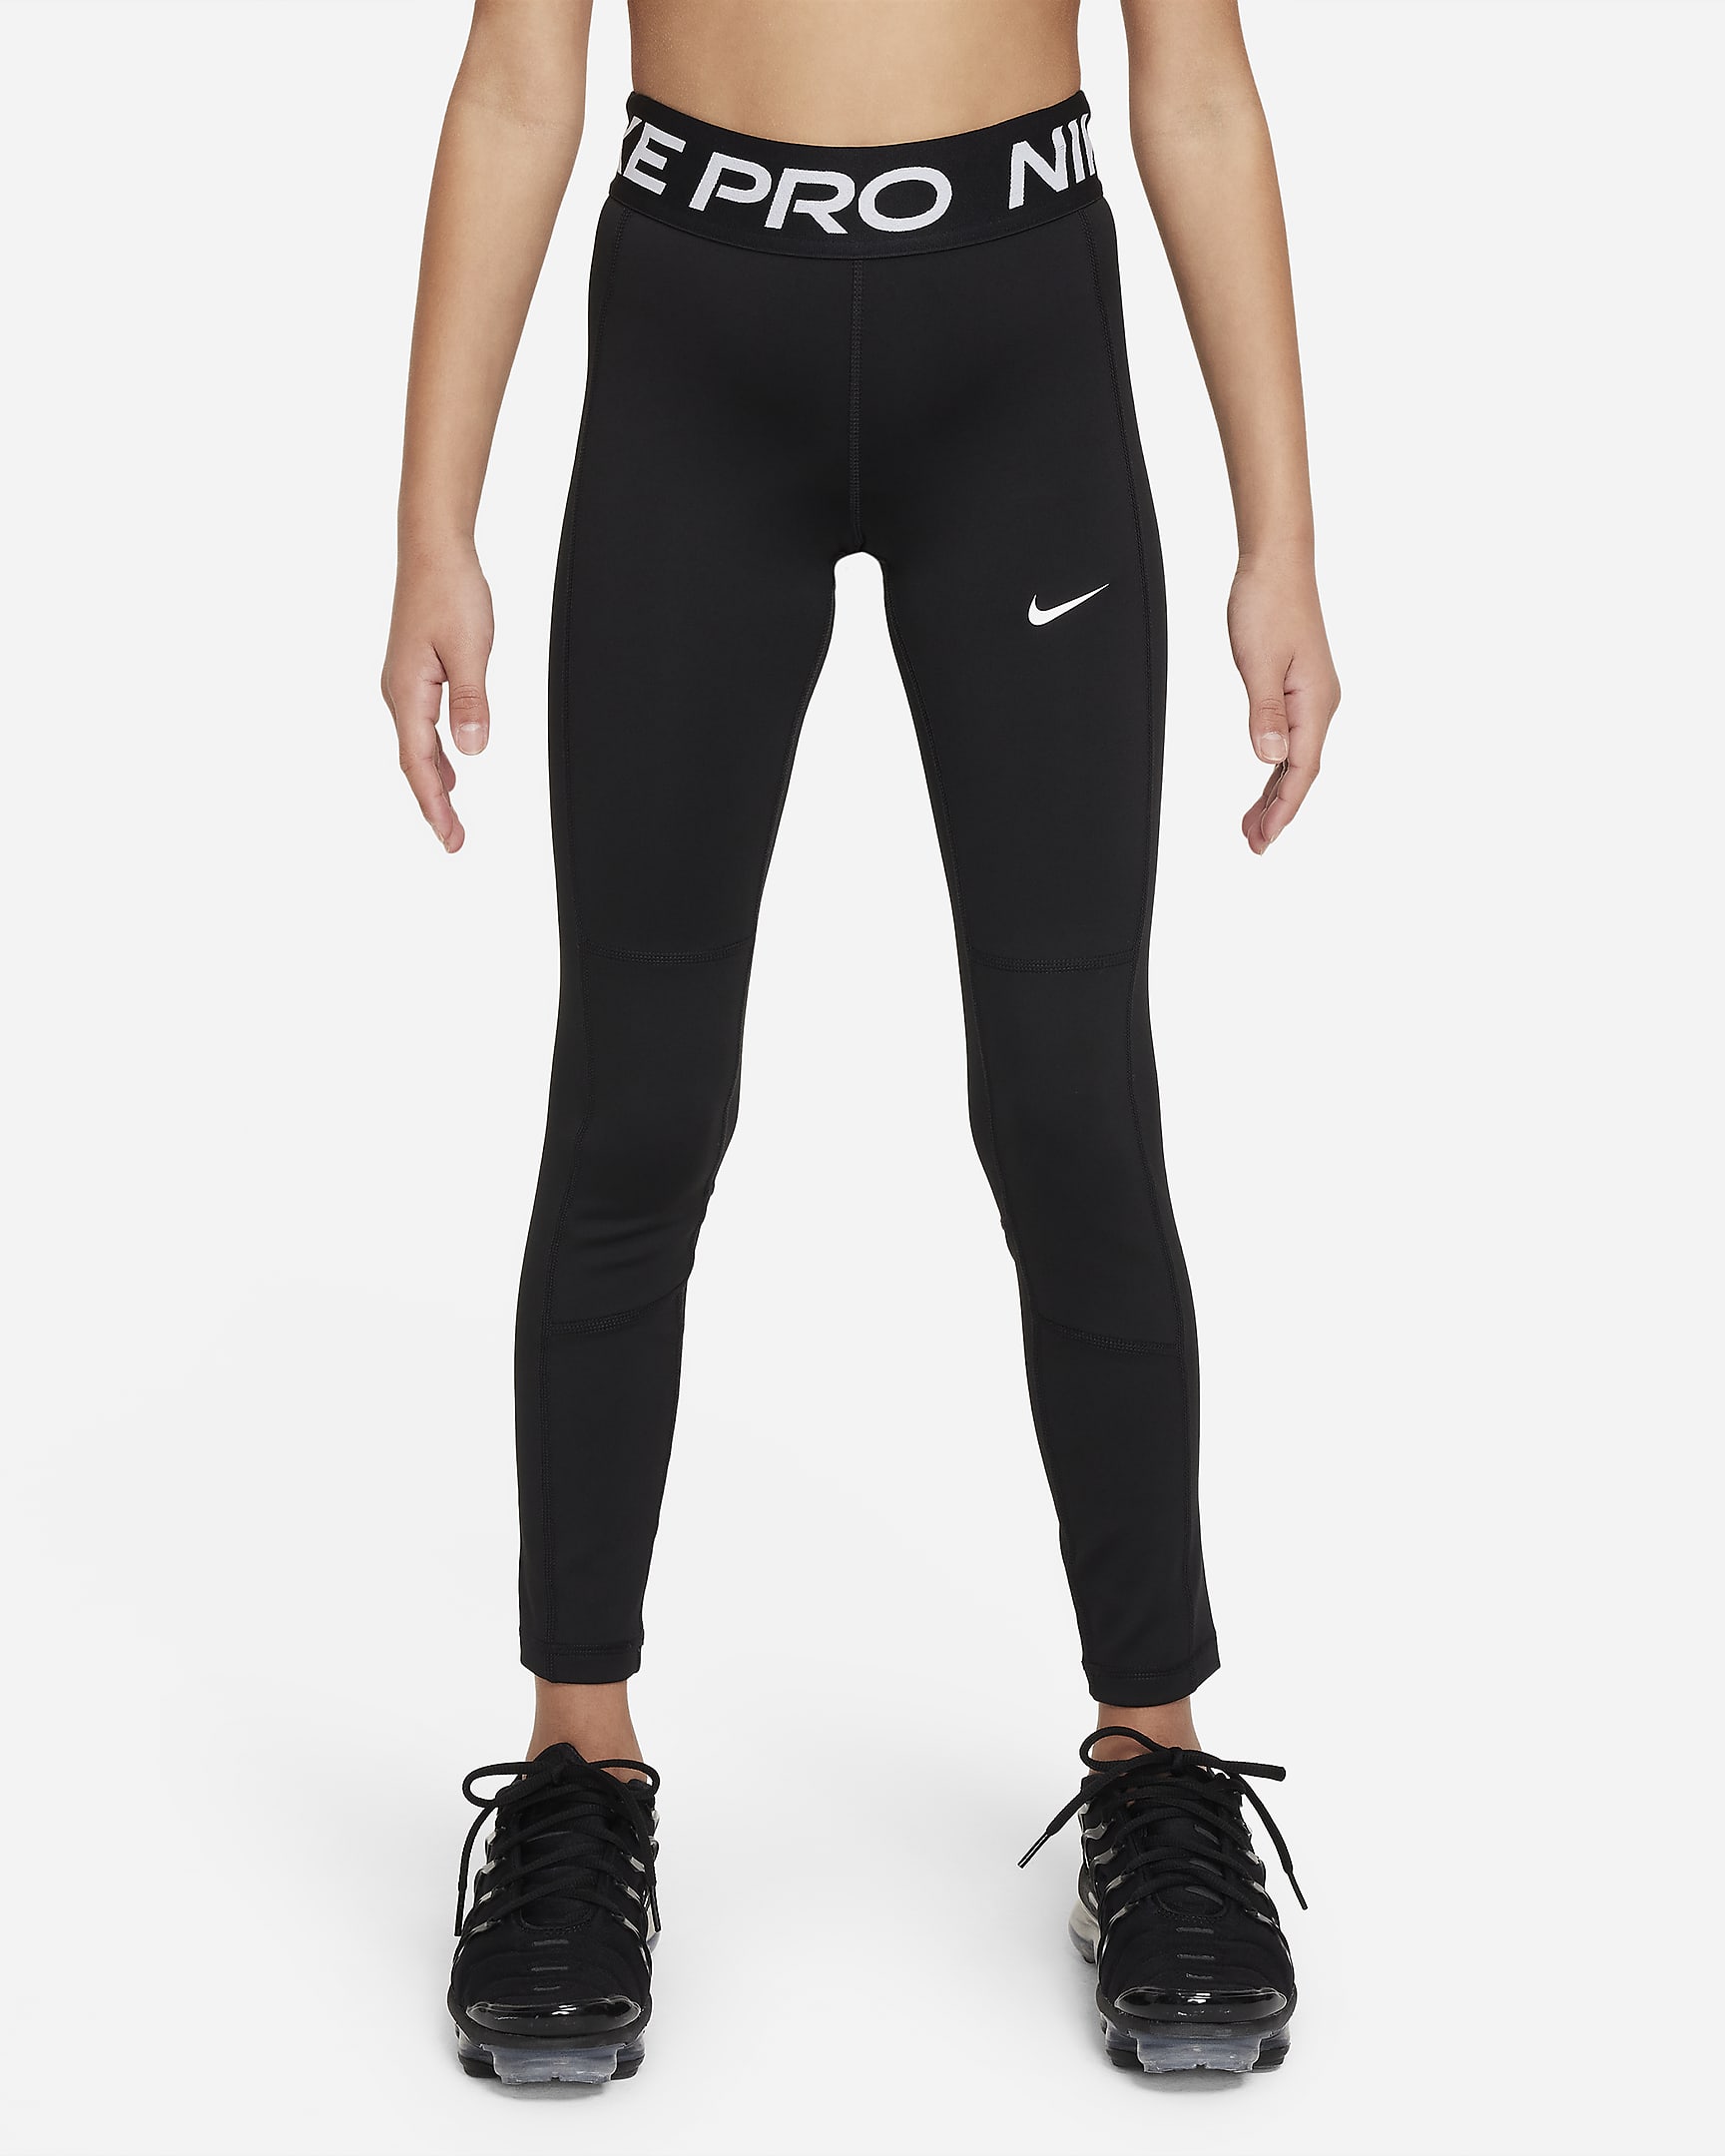 Legginsy dla dziewcząt Dri-FIT Nike Pro Leak Protection: Period - Czerń/Biel